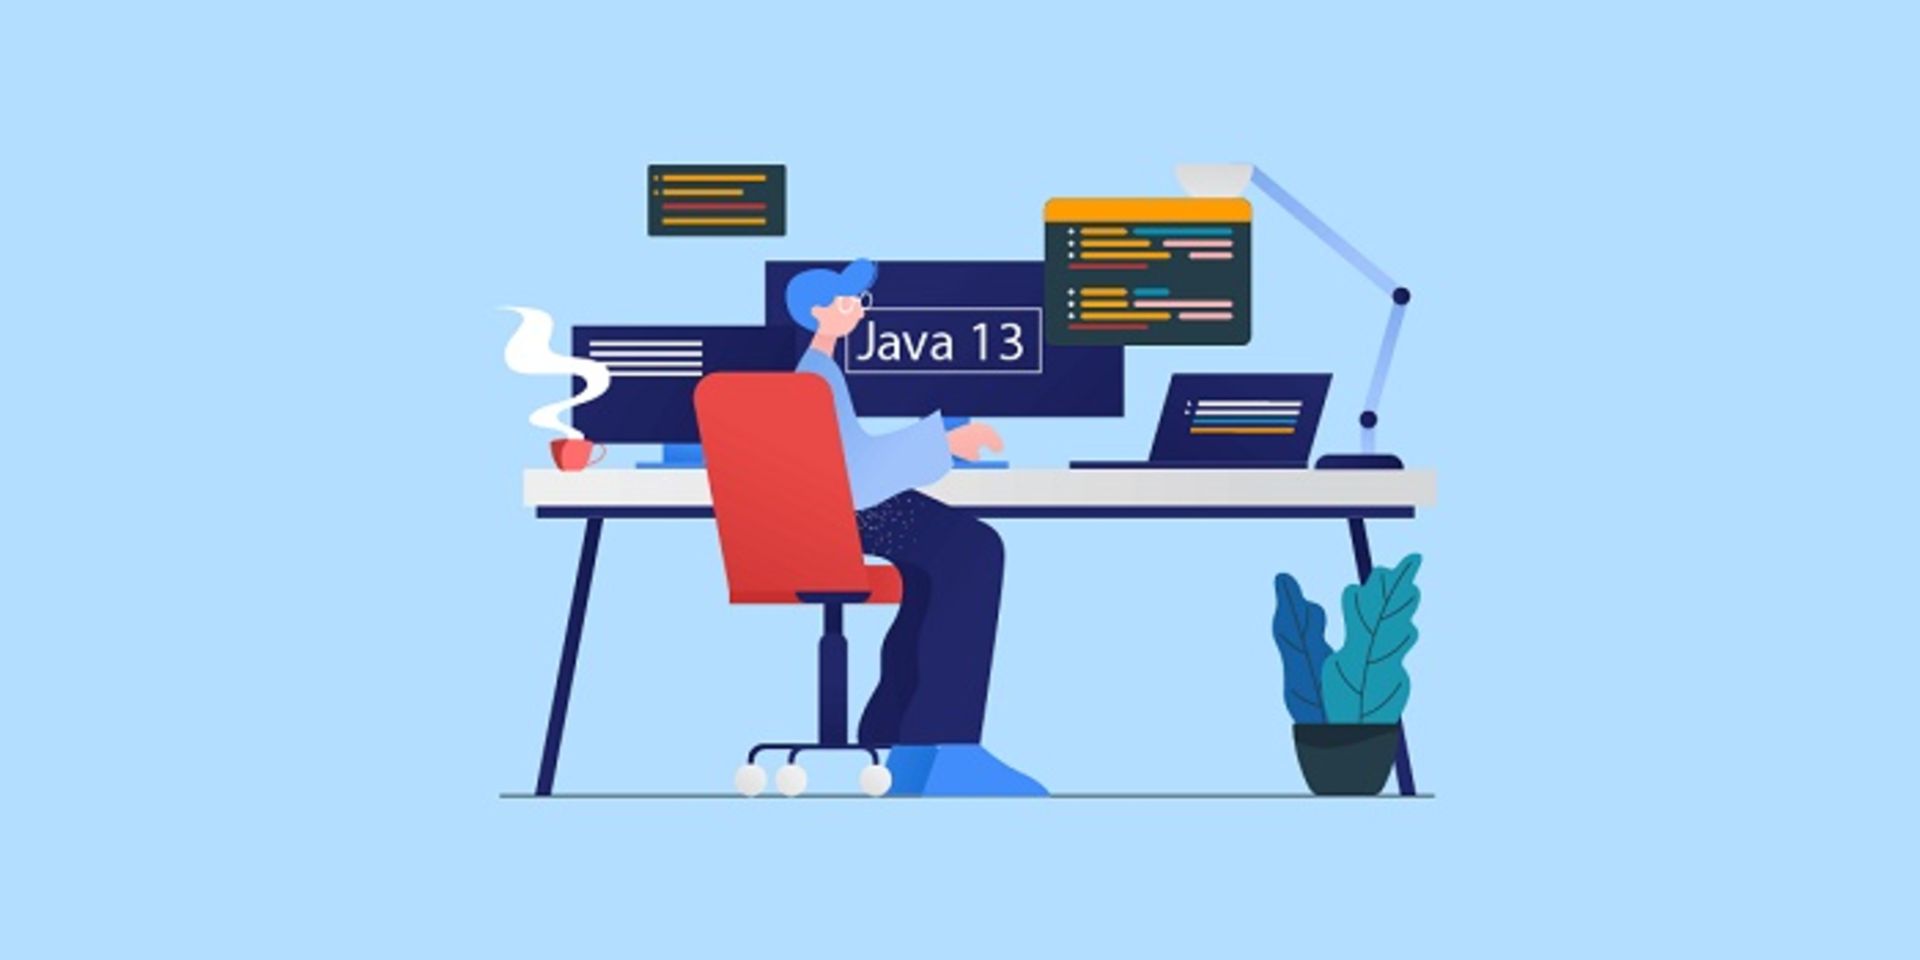 زبان برنامه نویسی جاوا ۱۳ / Programming language Java 13